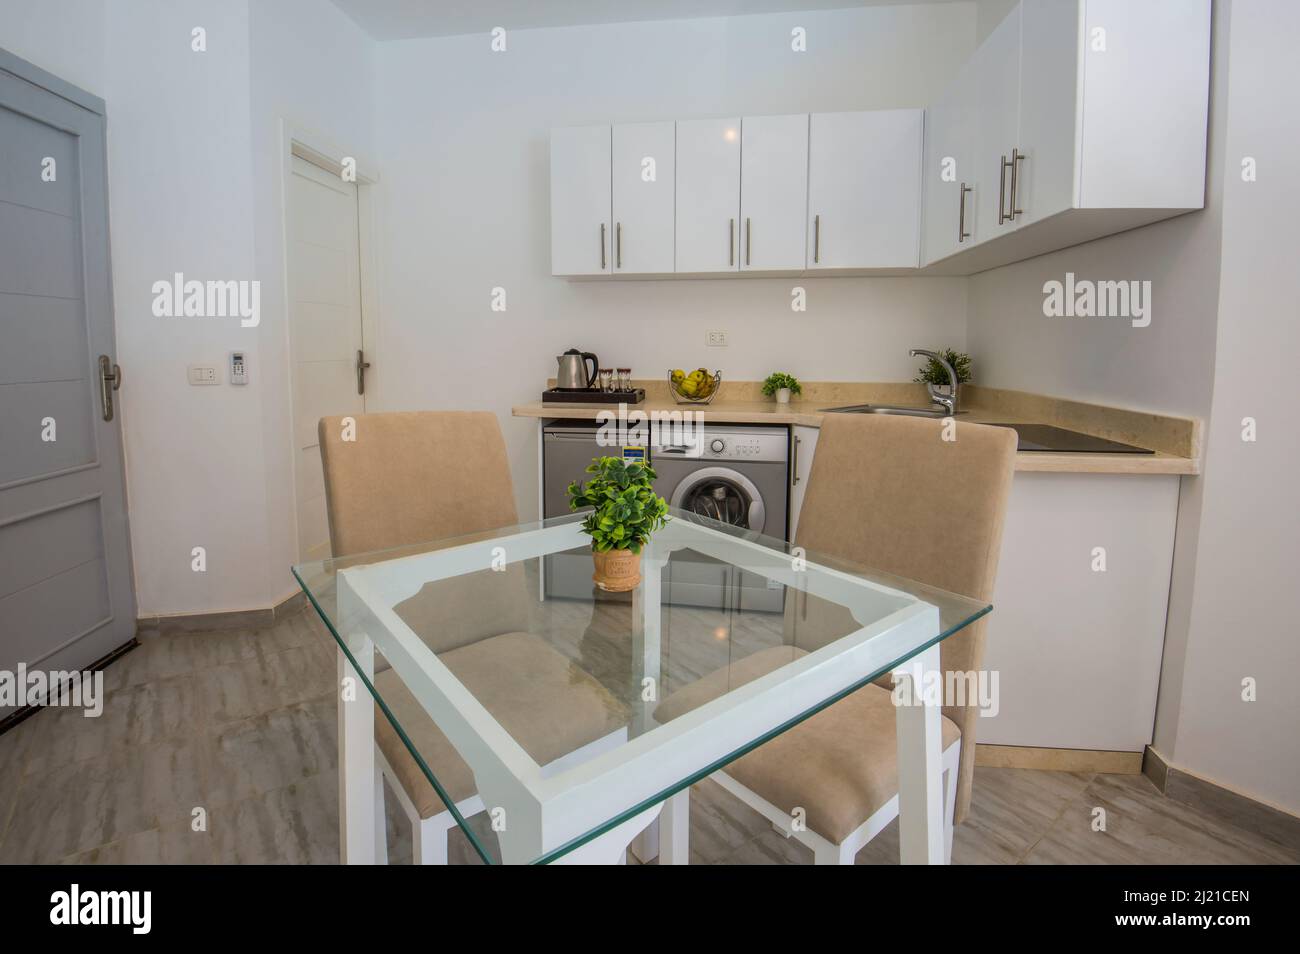 Inneneinrichtung mit moderner Küche und Geräten in einem luxuriösen Apartment-Showroom mit Esstisch Stockfoto